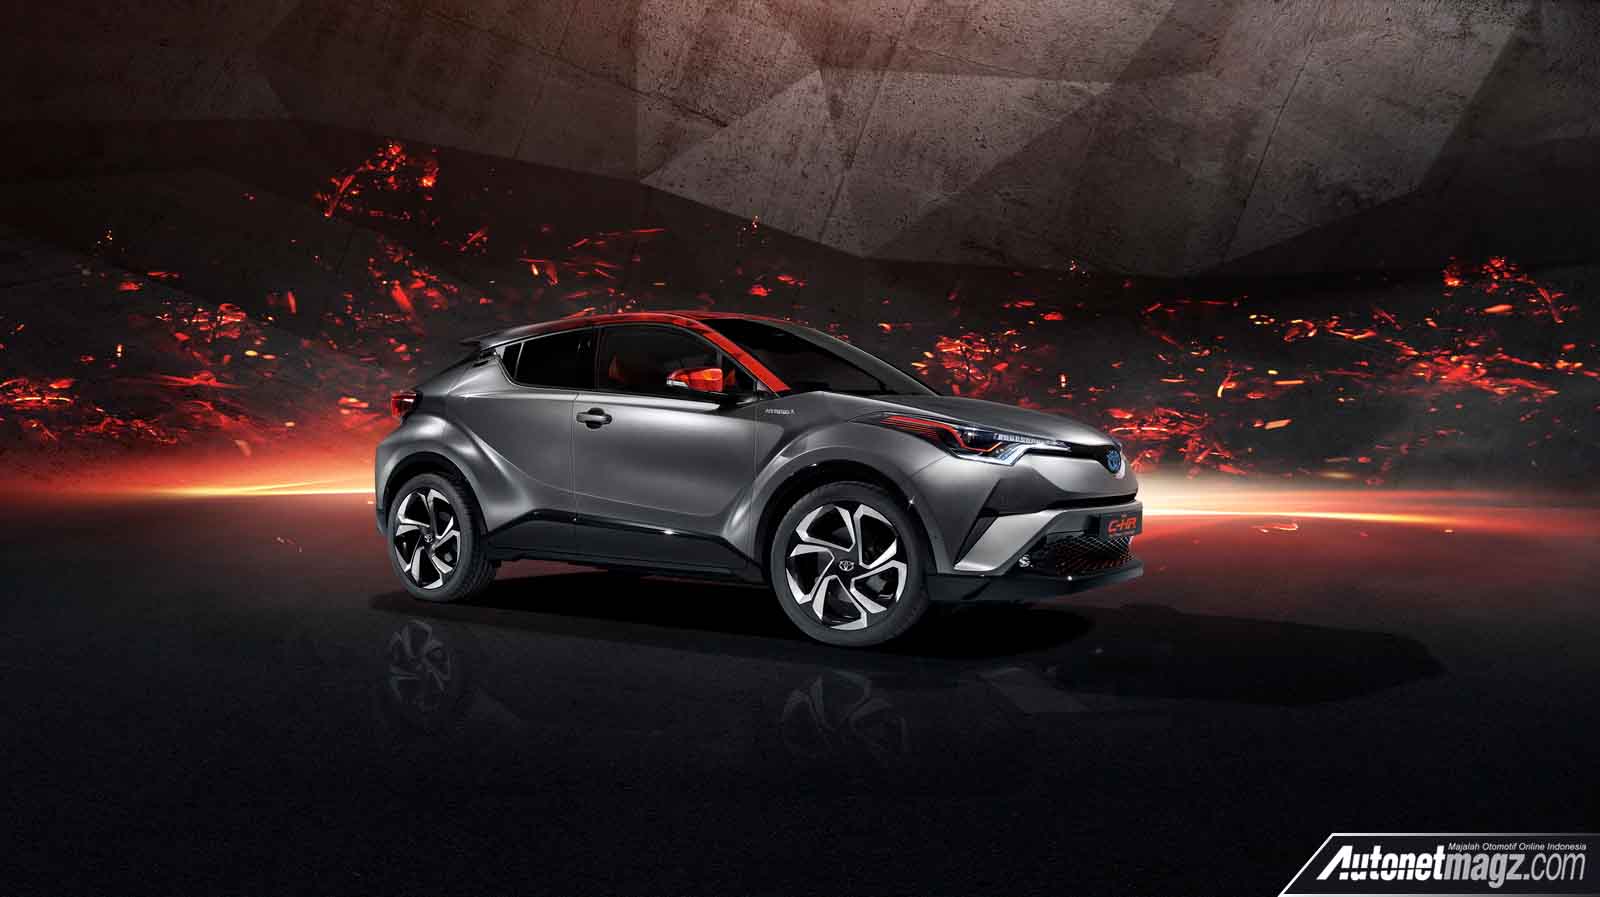 Berita, sisi depan Toyota C-HR Hy-Power Concept: Frankfurt Motor Show 2017 : Toyota C-HR Hy-Power Concept Diperkenalkan